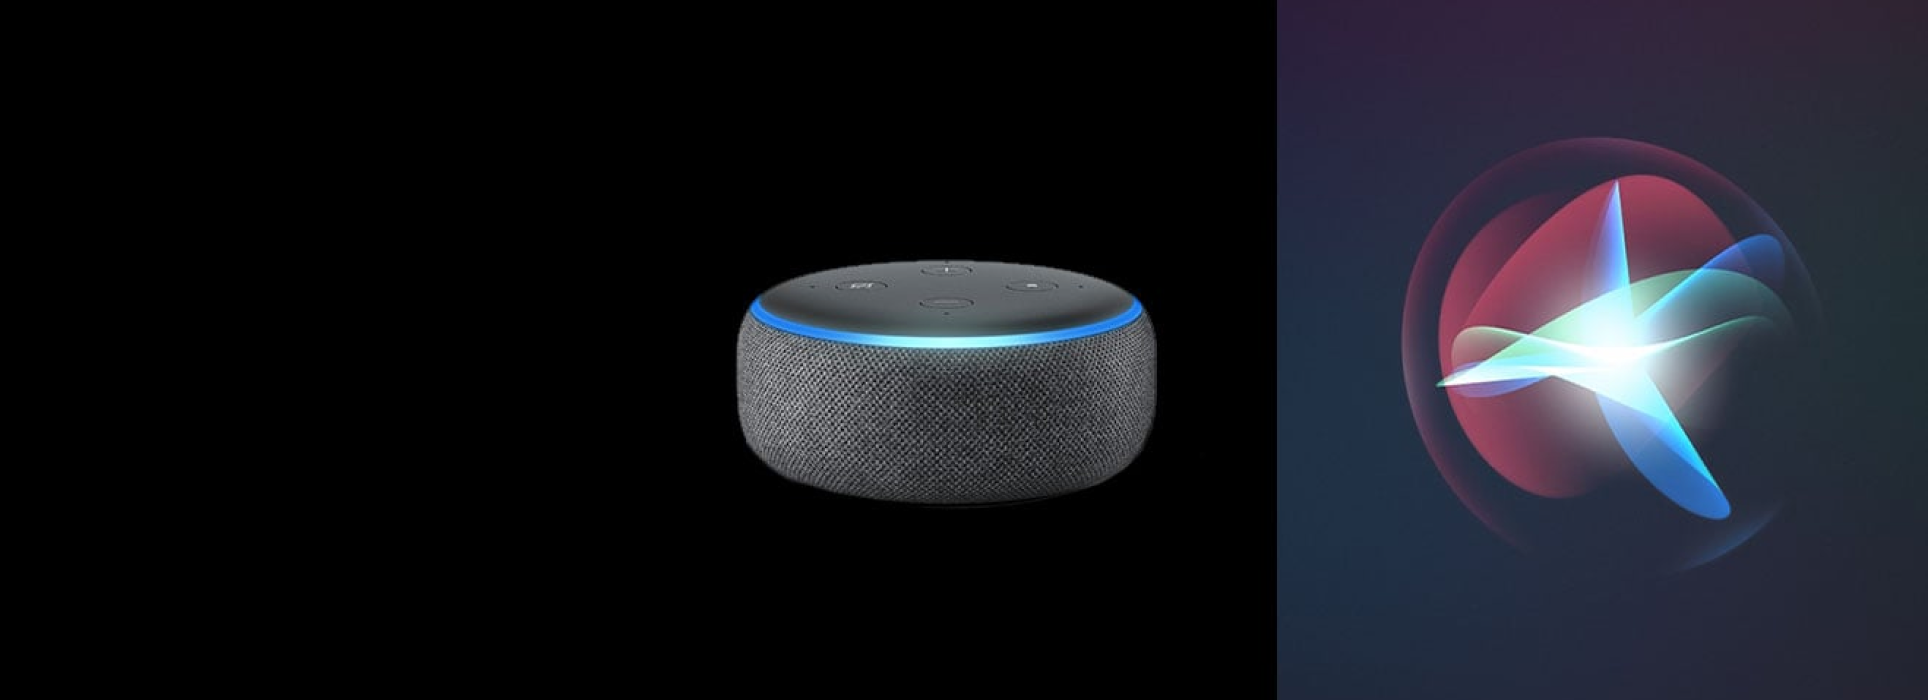 Qui est le meilleur assistant? Siri ou Alexa